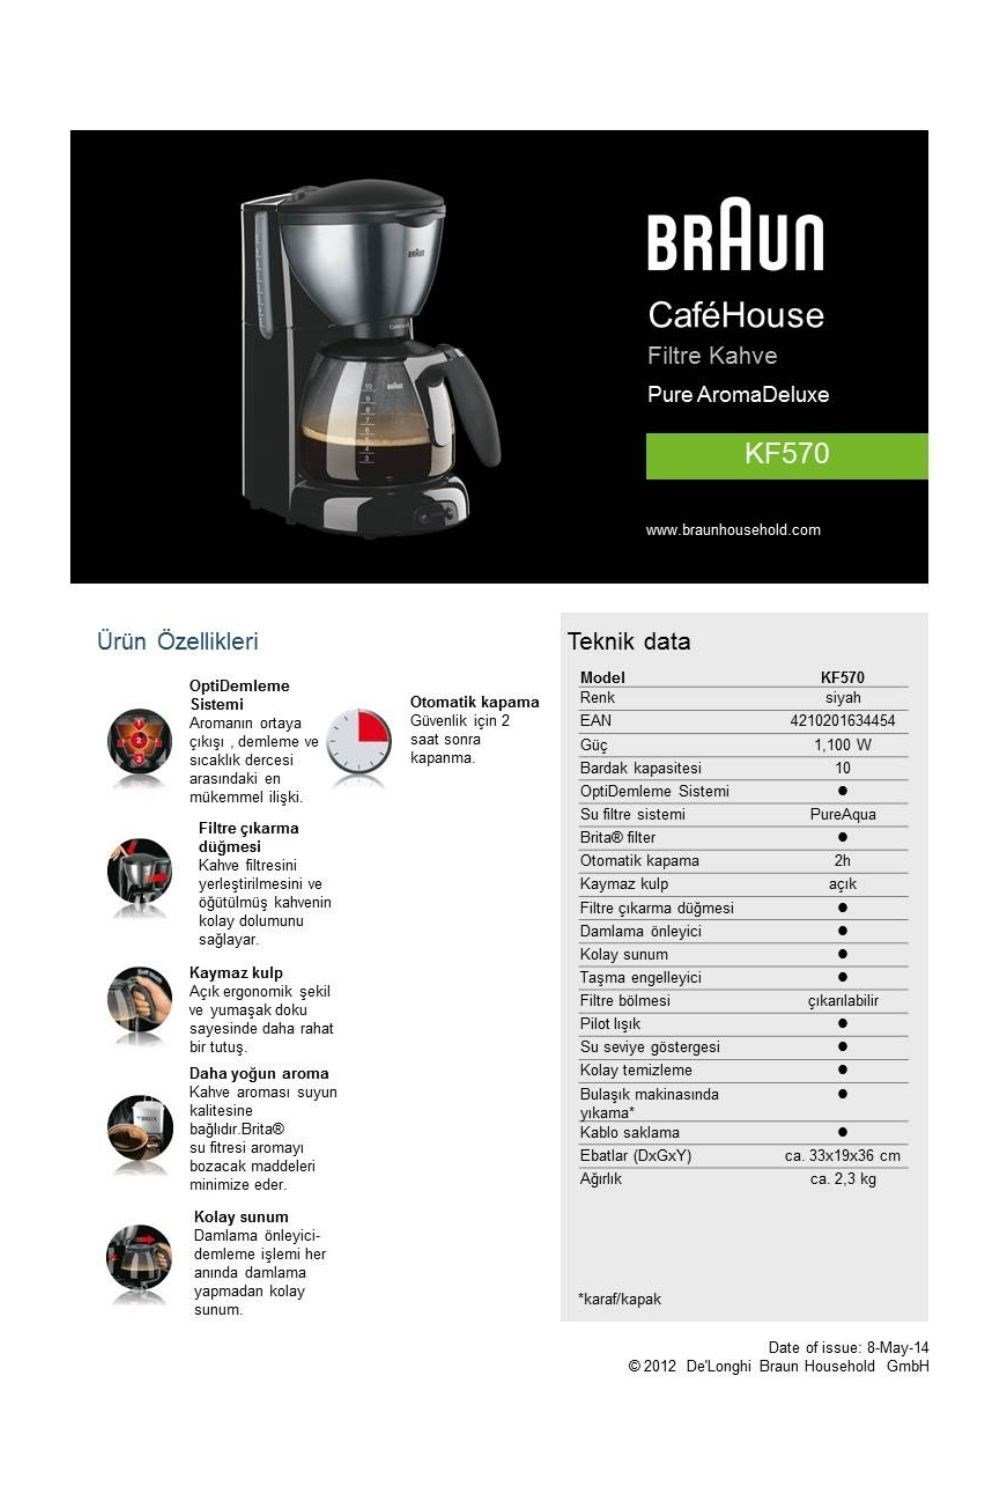 Braun KF570 Cafe House Filtre Kahve Makinesi (Teşhir & Outlet) - KF570/1 -  Teşhir & Outlet Fırsatlarıyla | En Uygun Fiyatlar ve Hızlı Kargo!